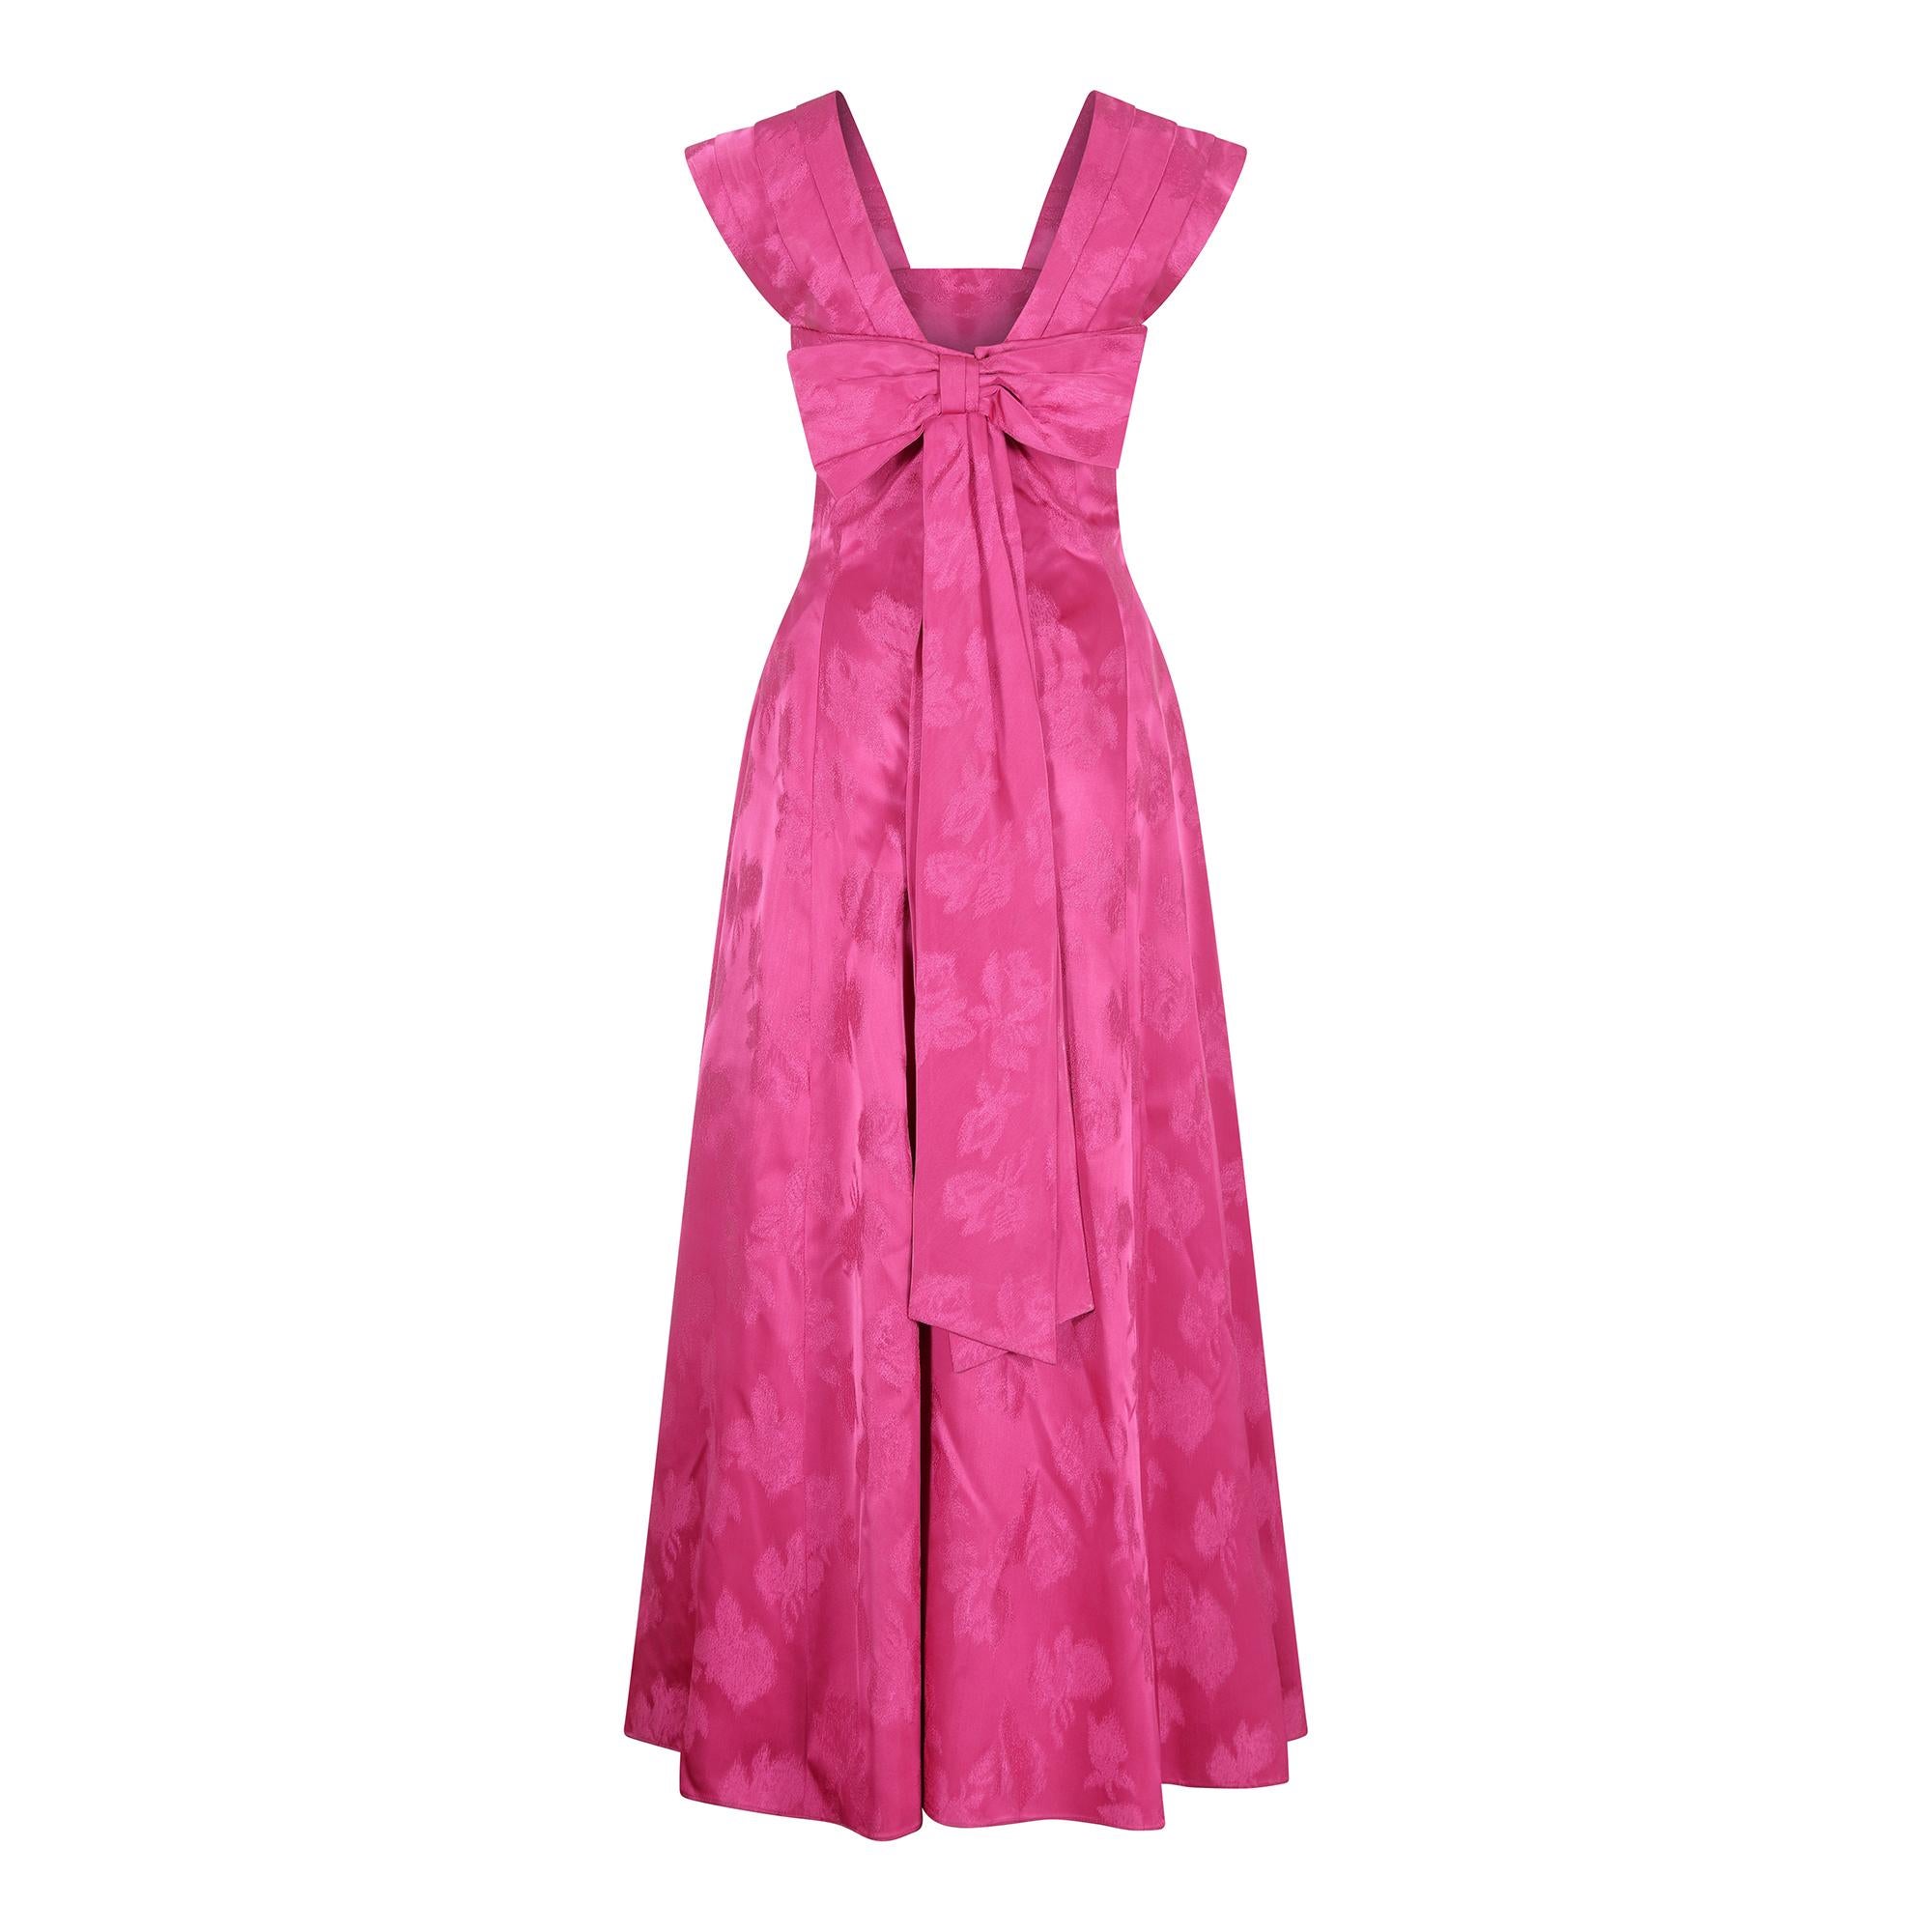 Une superbe et magnifique robe de soirée en satin à imprimé floral de couleur magenta datant du milieu des années 1950.  Les tenues de soirée de cette époque sont de plus en plus difficiles à trouver. Cette robe de soirée est magnifiquement réalisée